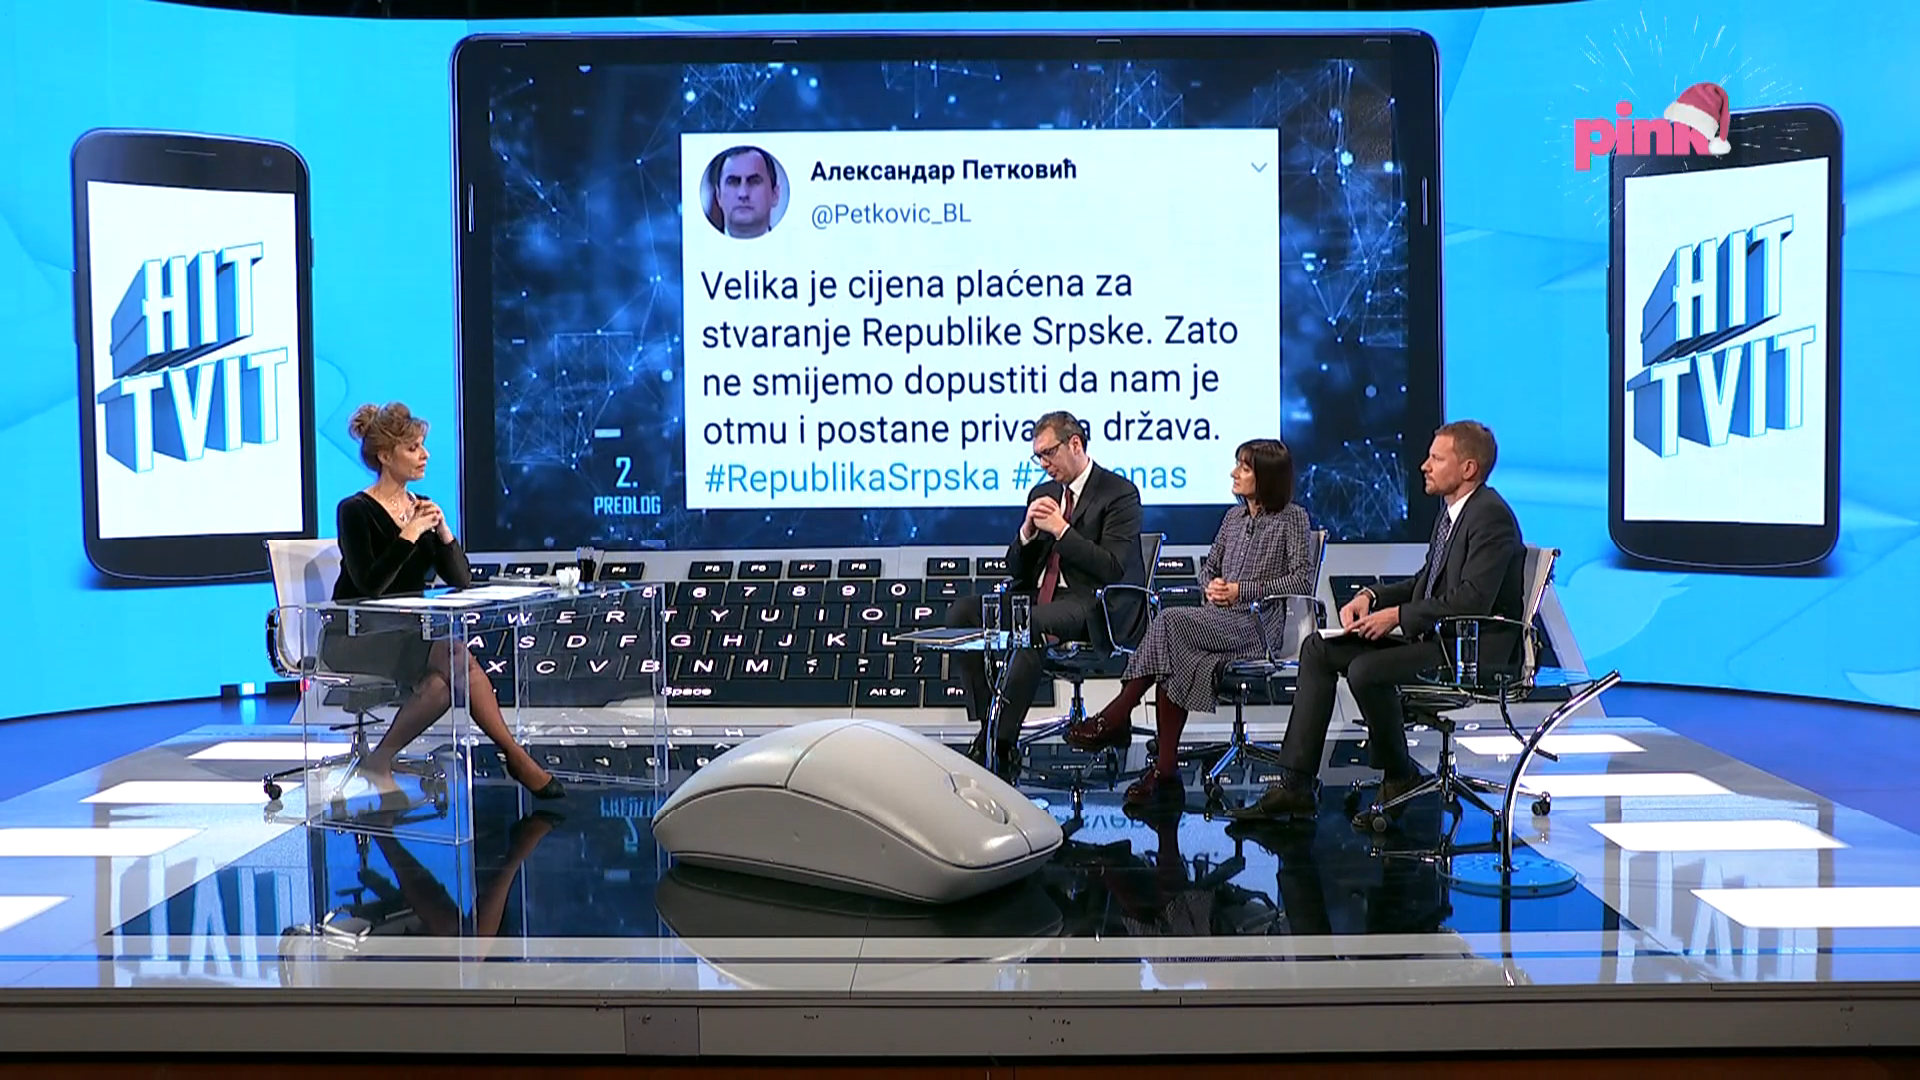 Predsednik Srbije Aleksandar Vucic u emisiji Hit tvit.